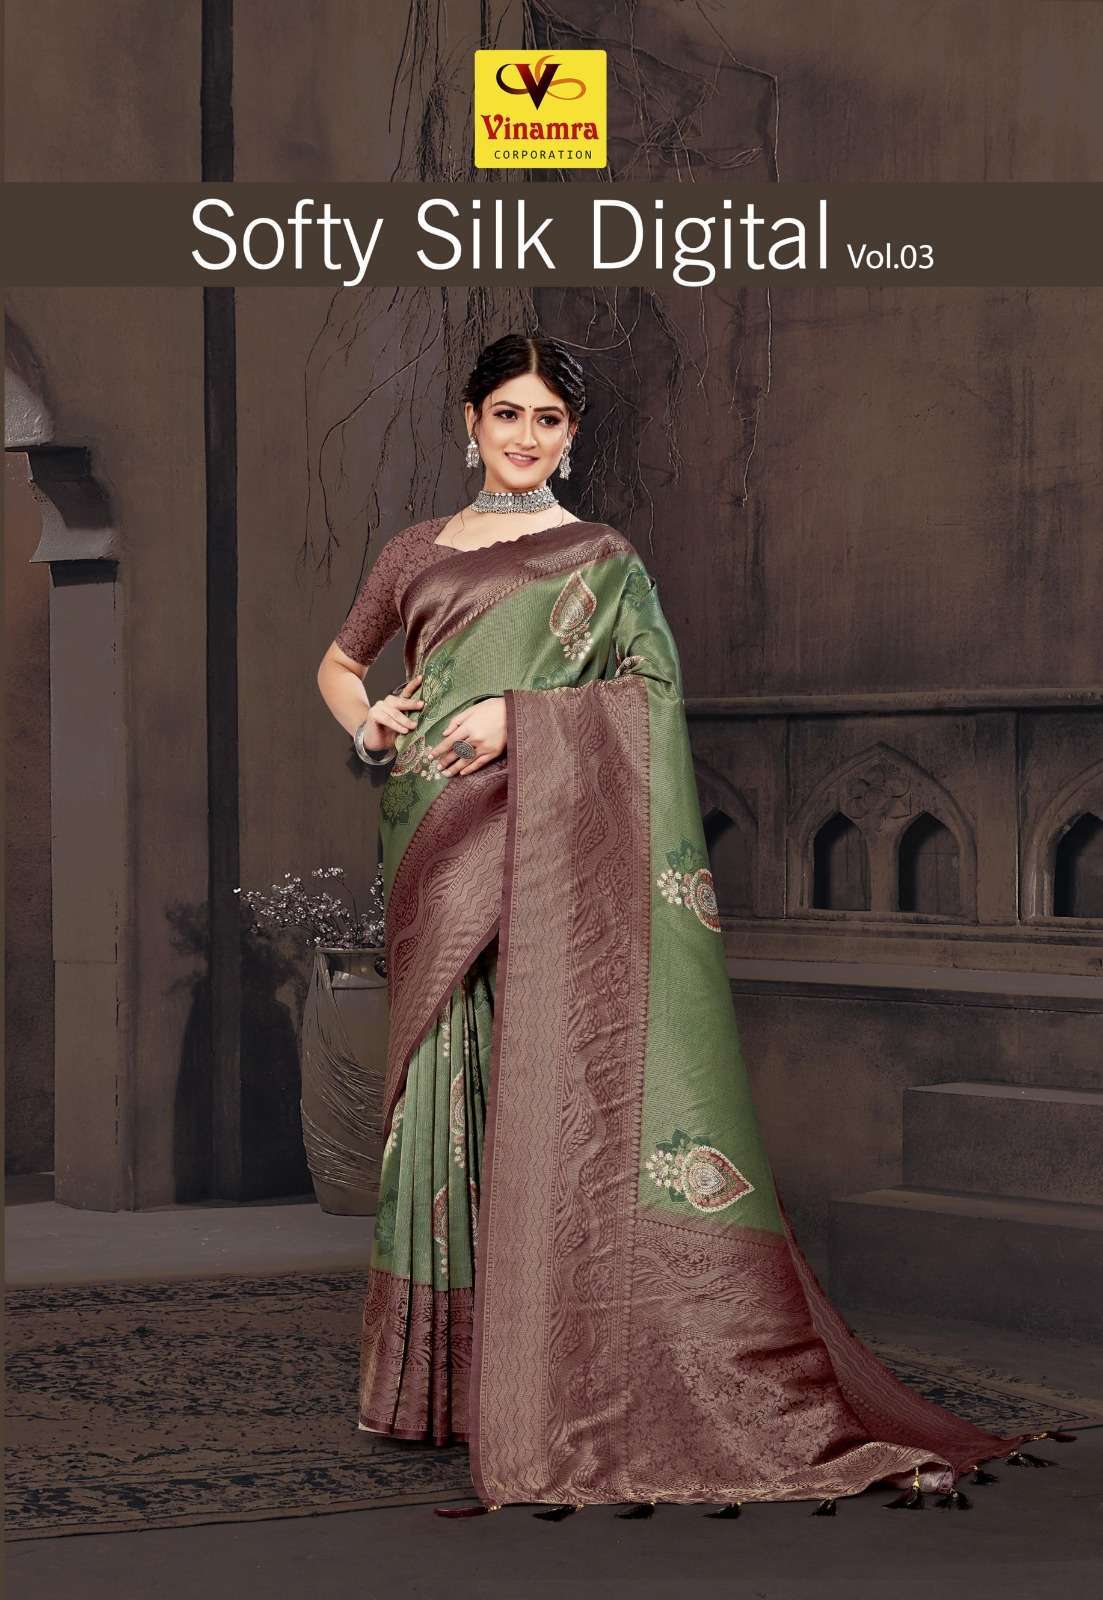 vinamra soft silk digital vol 3 series 2317-2324 soft silk saree